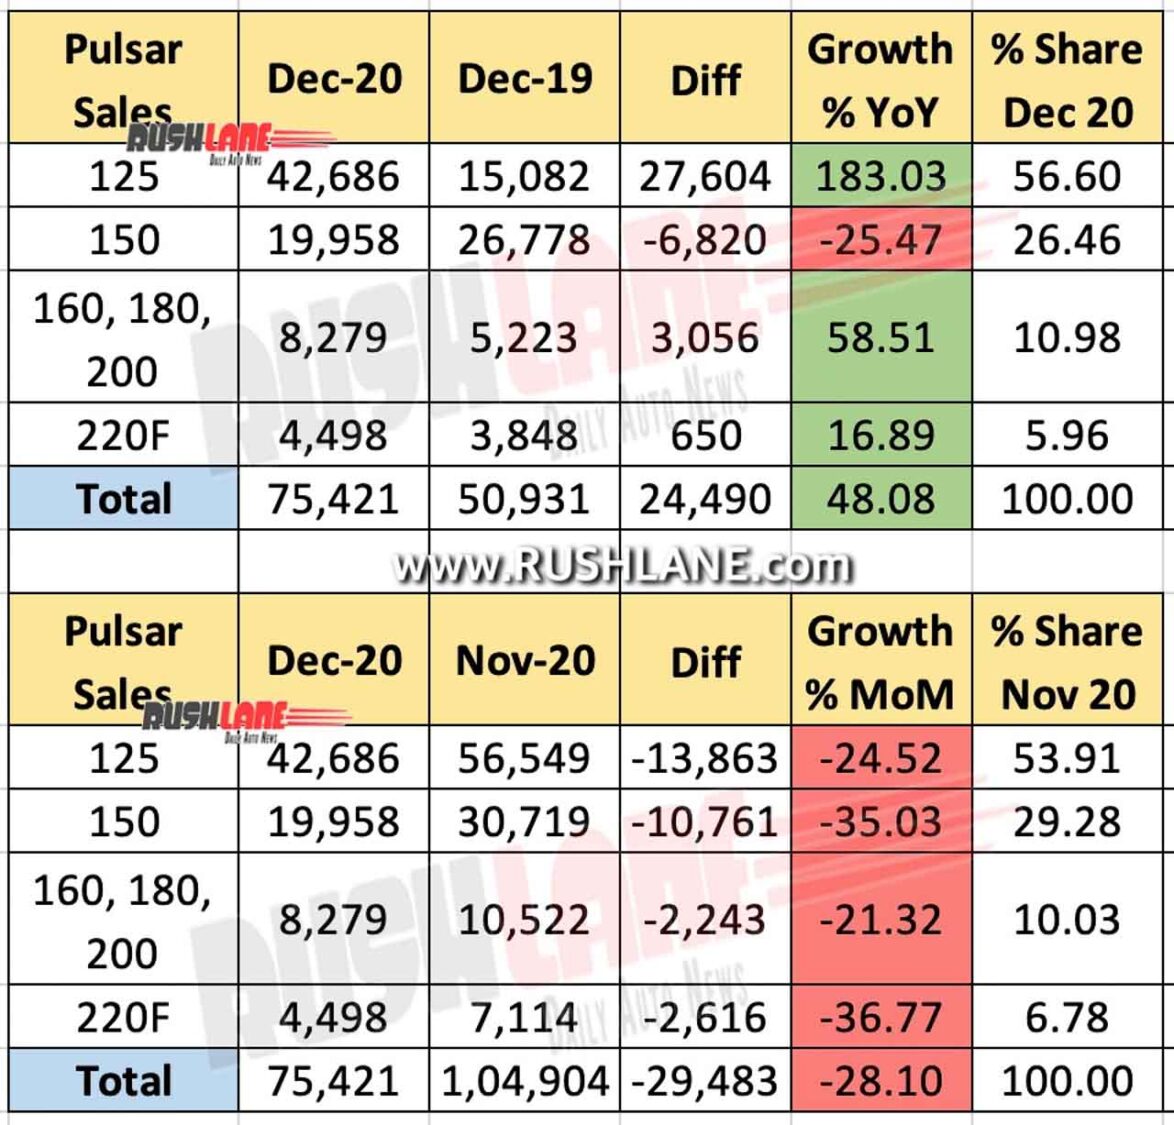 Bajaj Pulsar Domestic Sales Dec 2020